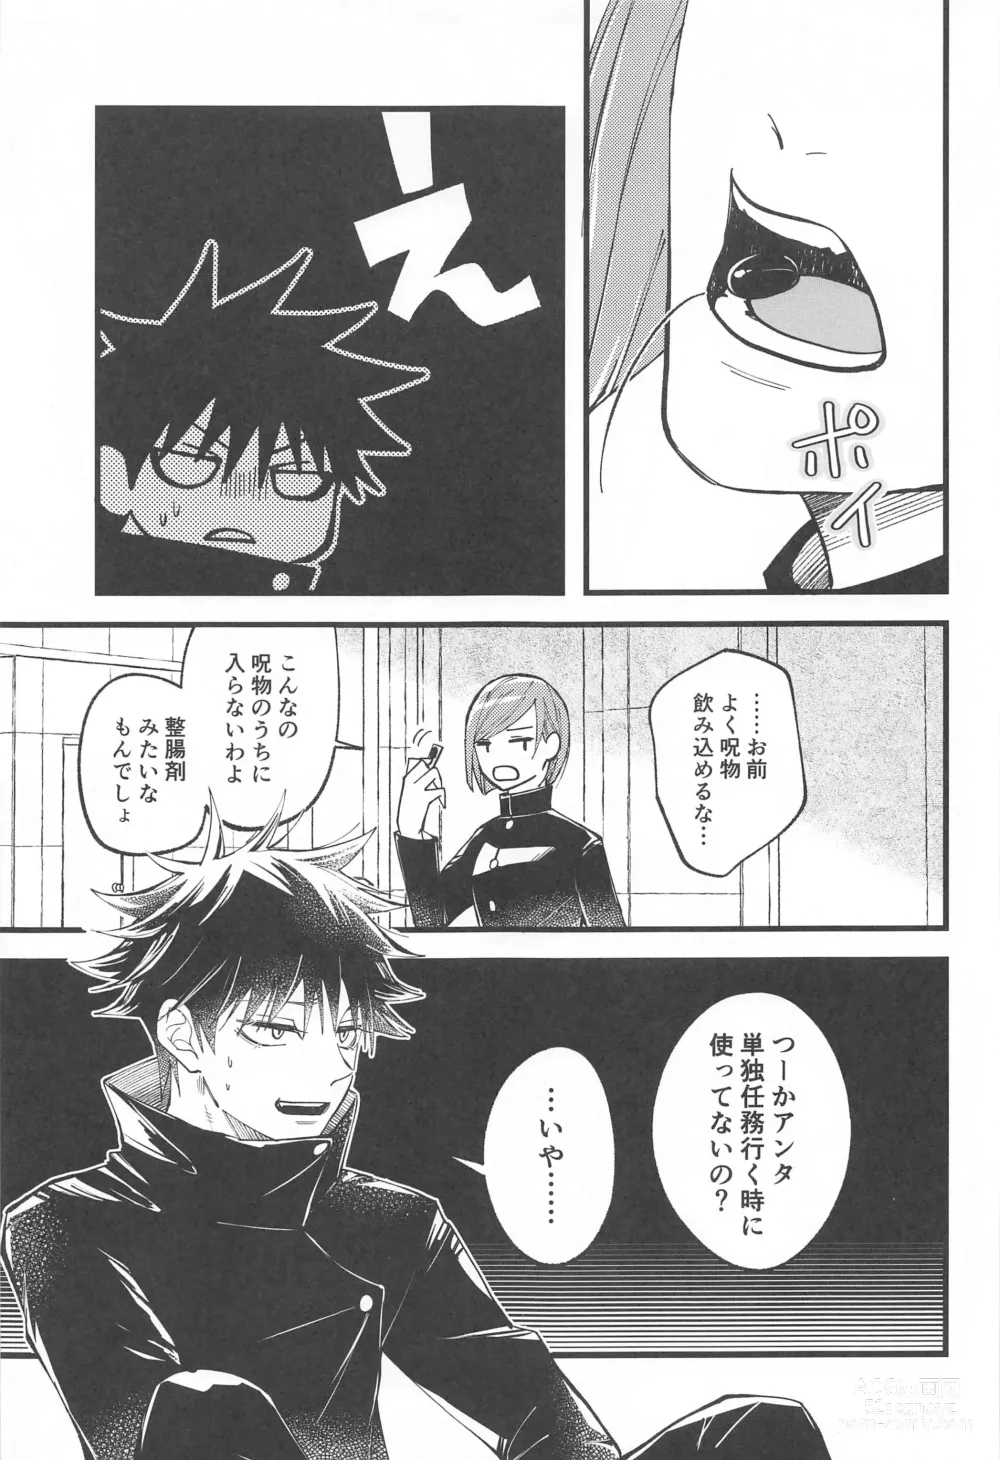 Page 14 of doujinshi Hara no Mushi ga Osamaranai!